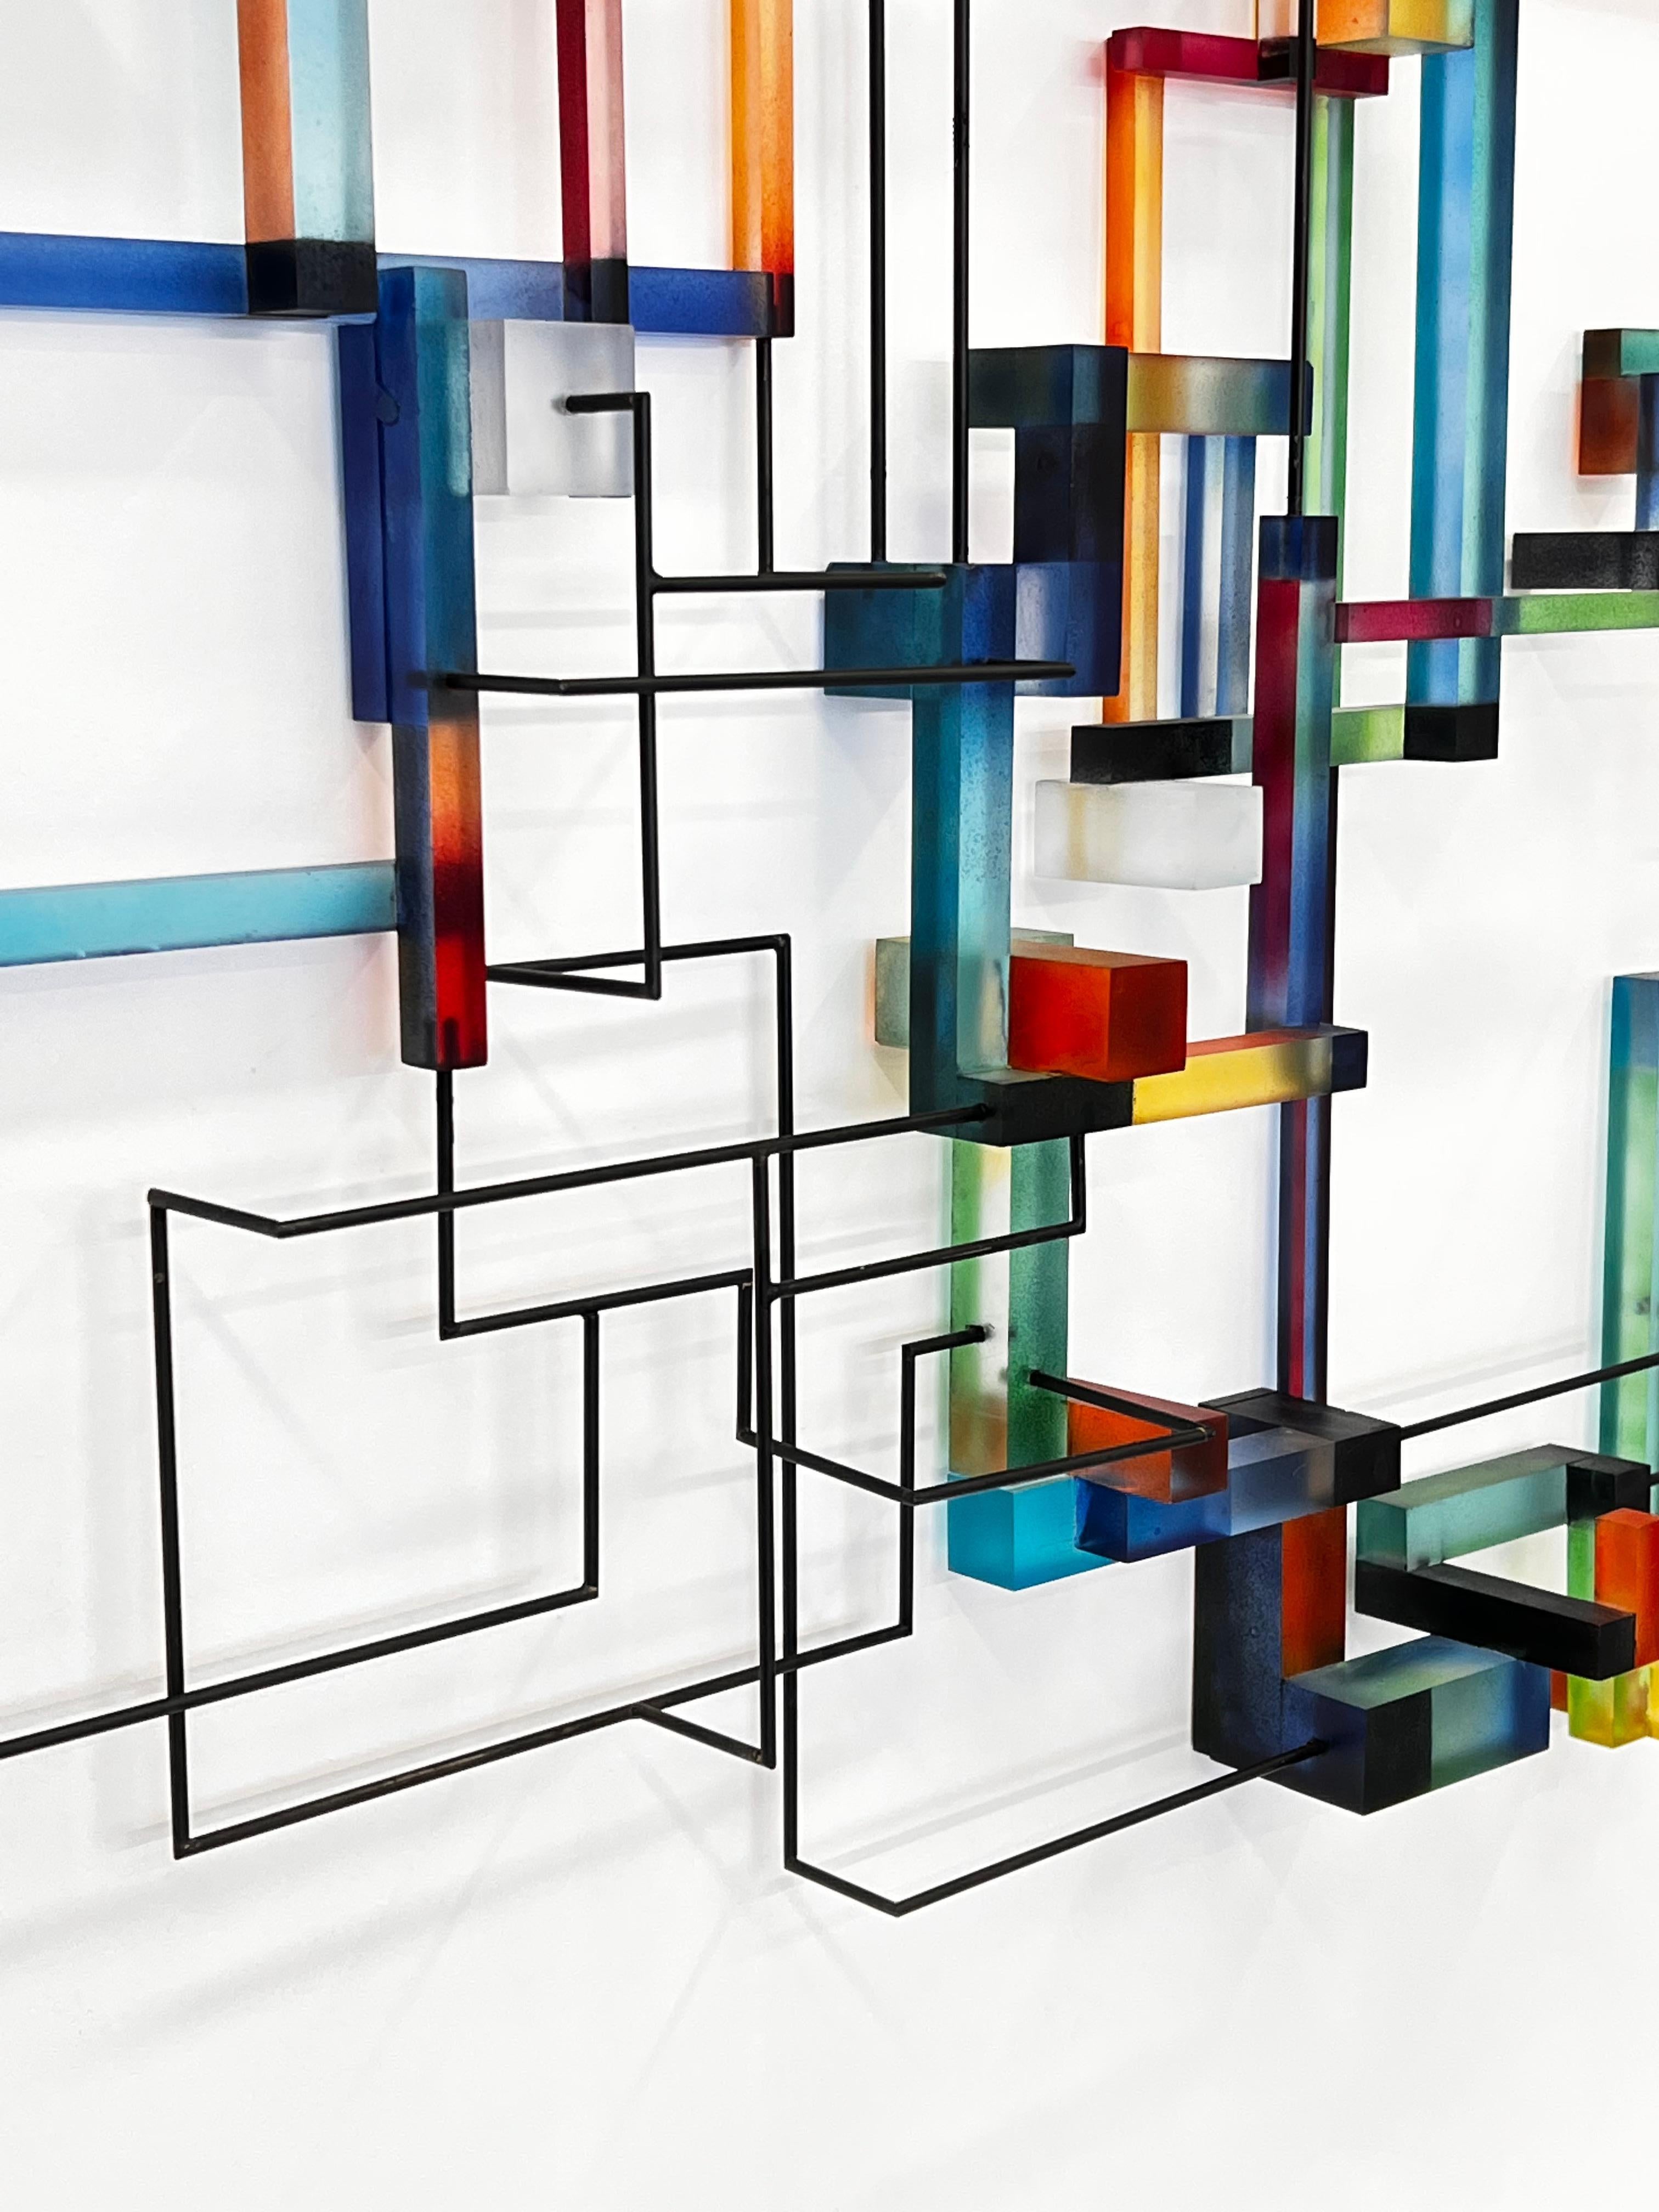 Prozor: zeitgenössische moderne abstrakte geometrische Skulptur (Geometrische Abstraktion), Sculpture, von Greg Chann